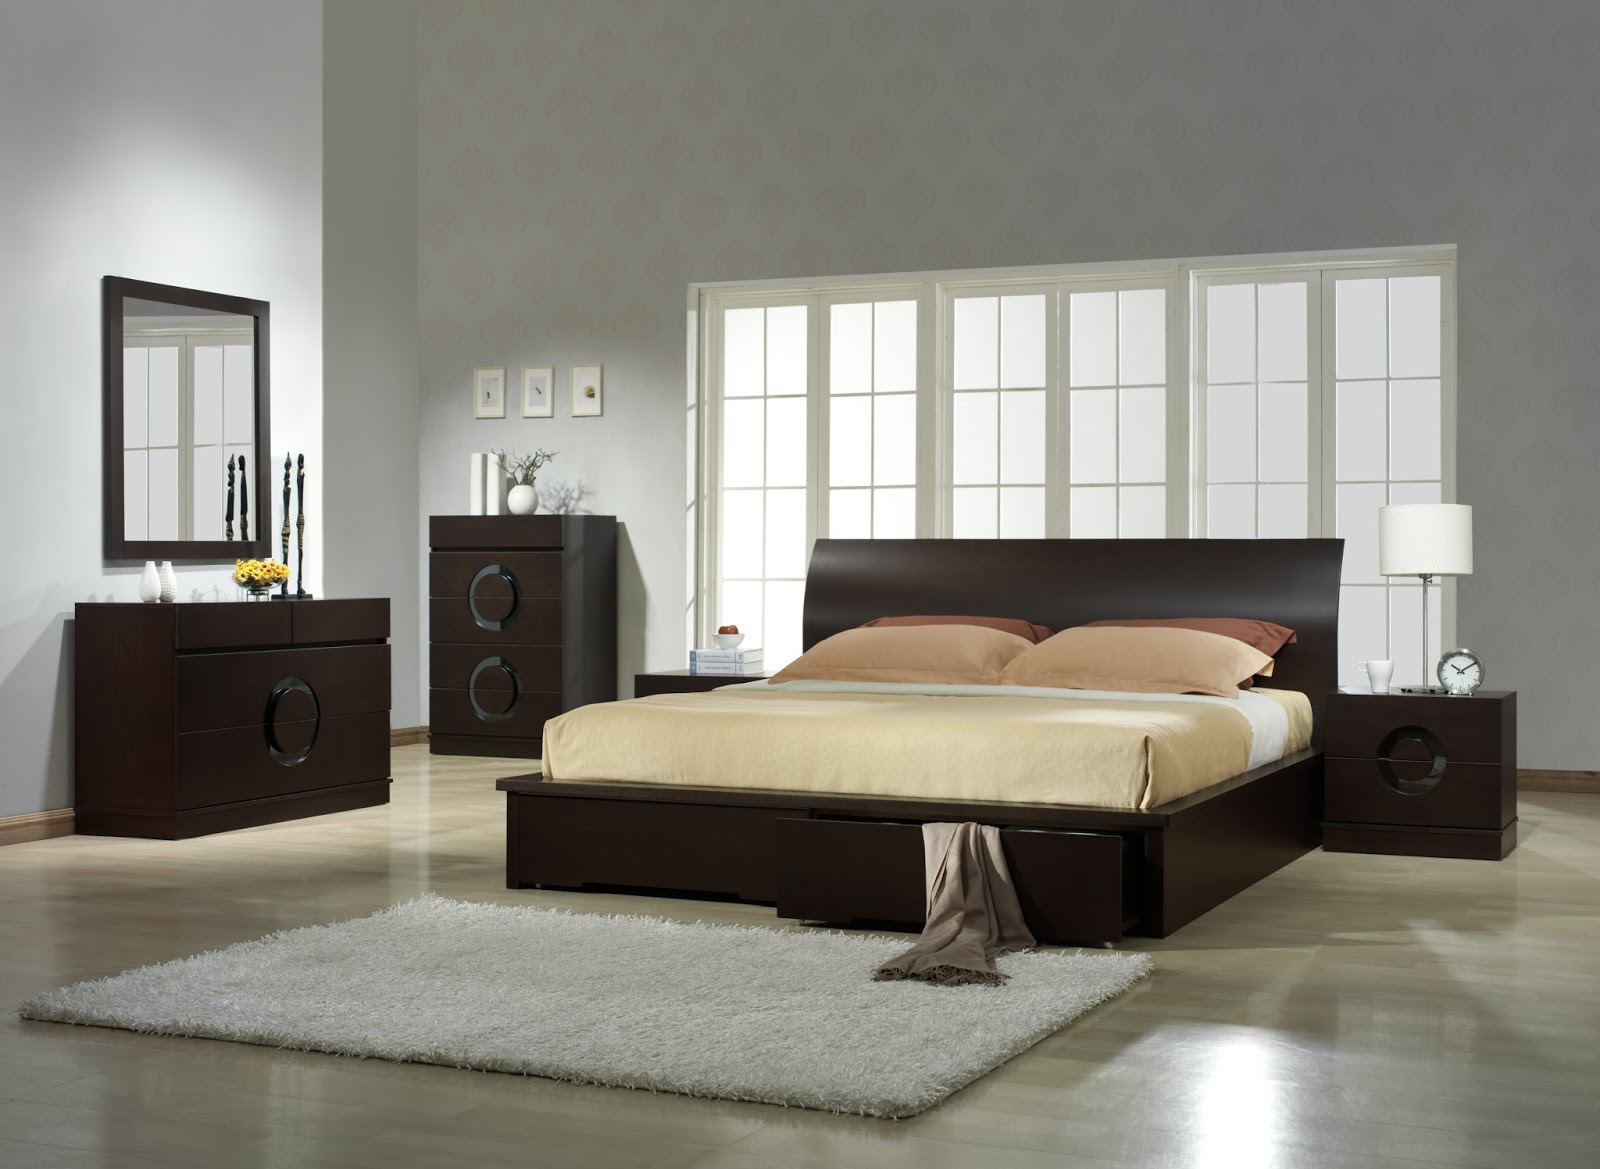 Design Of Bedroom